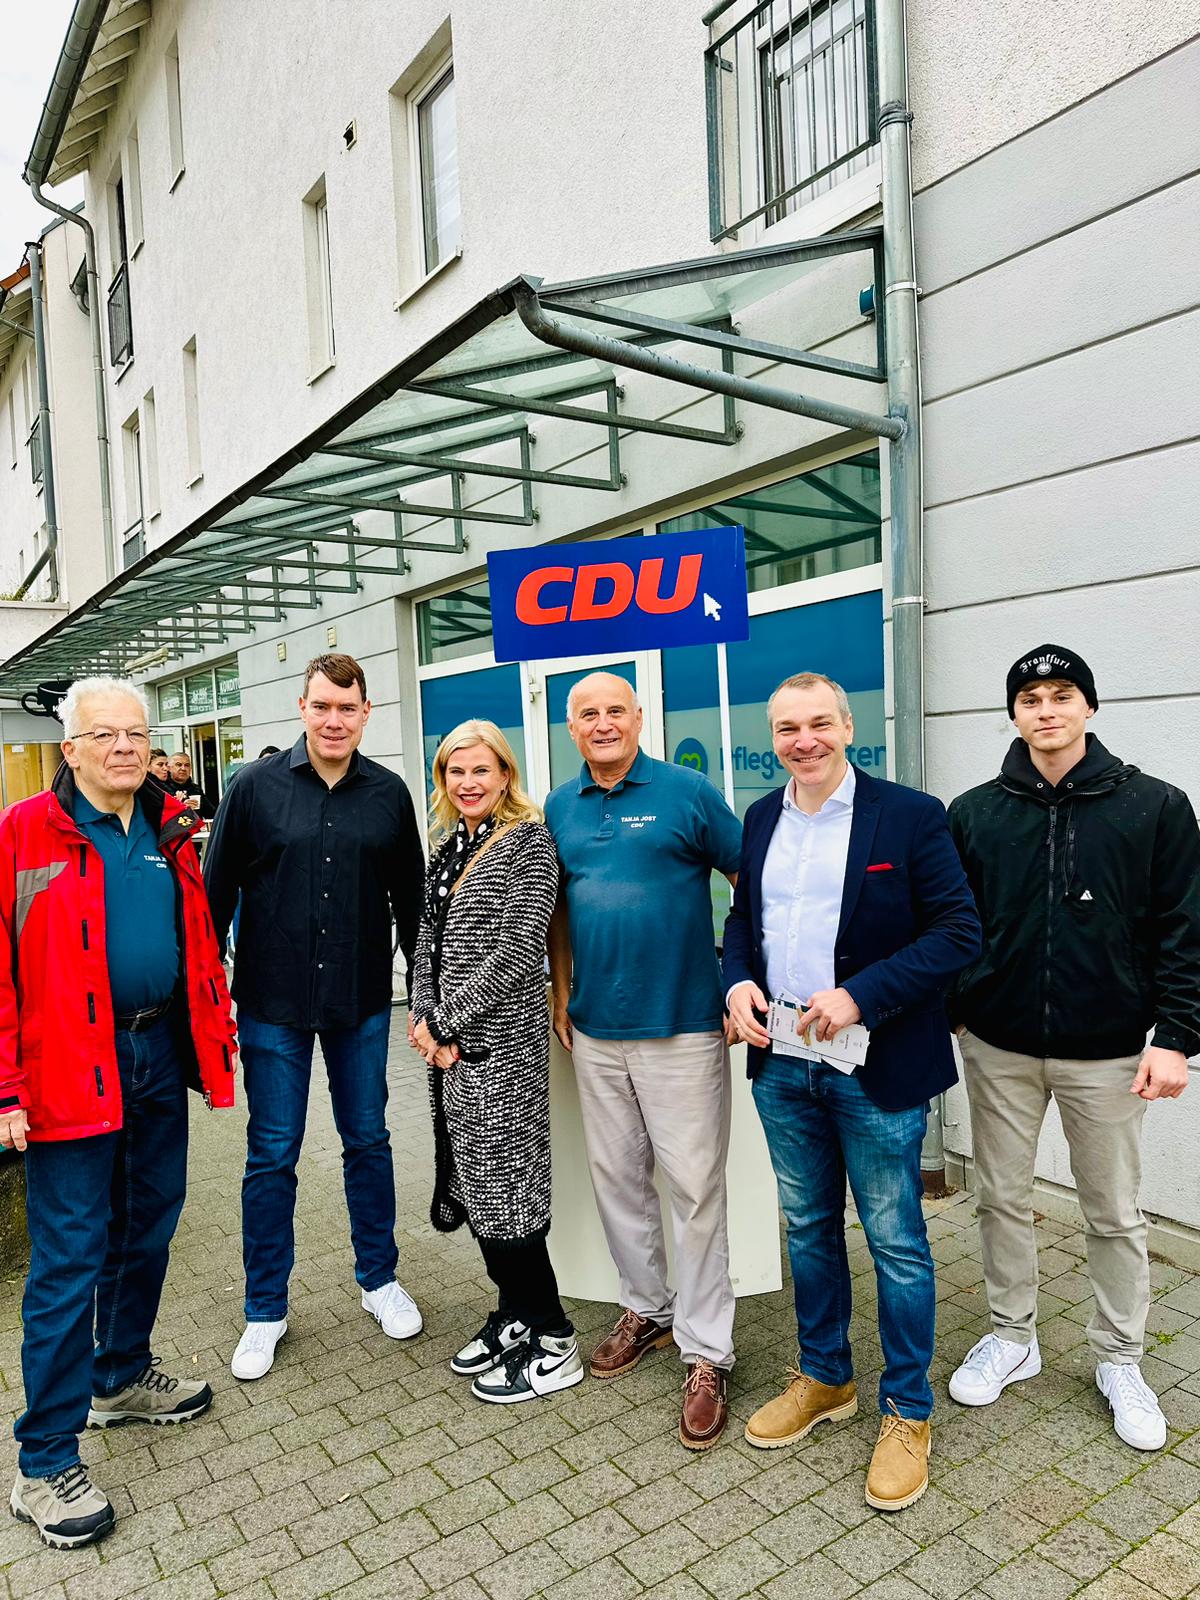 Endspurt im Wahlkampf startet in Praunheim